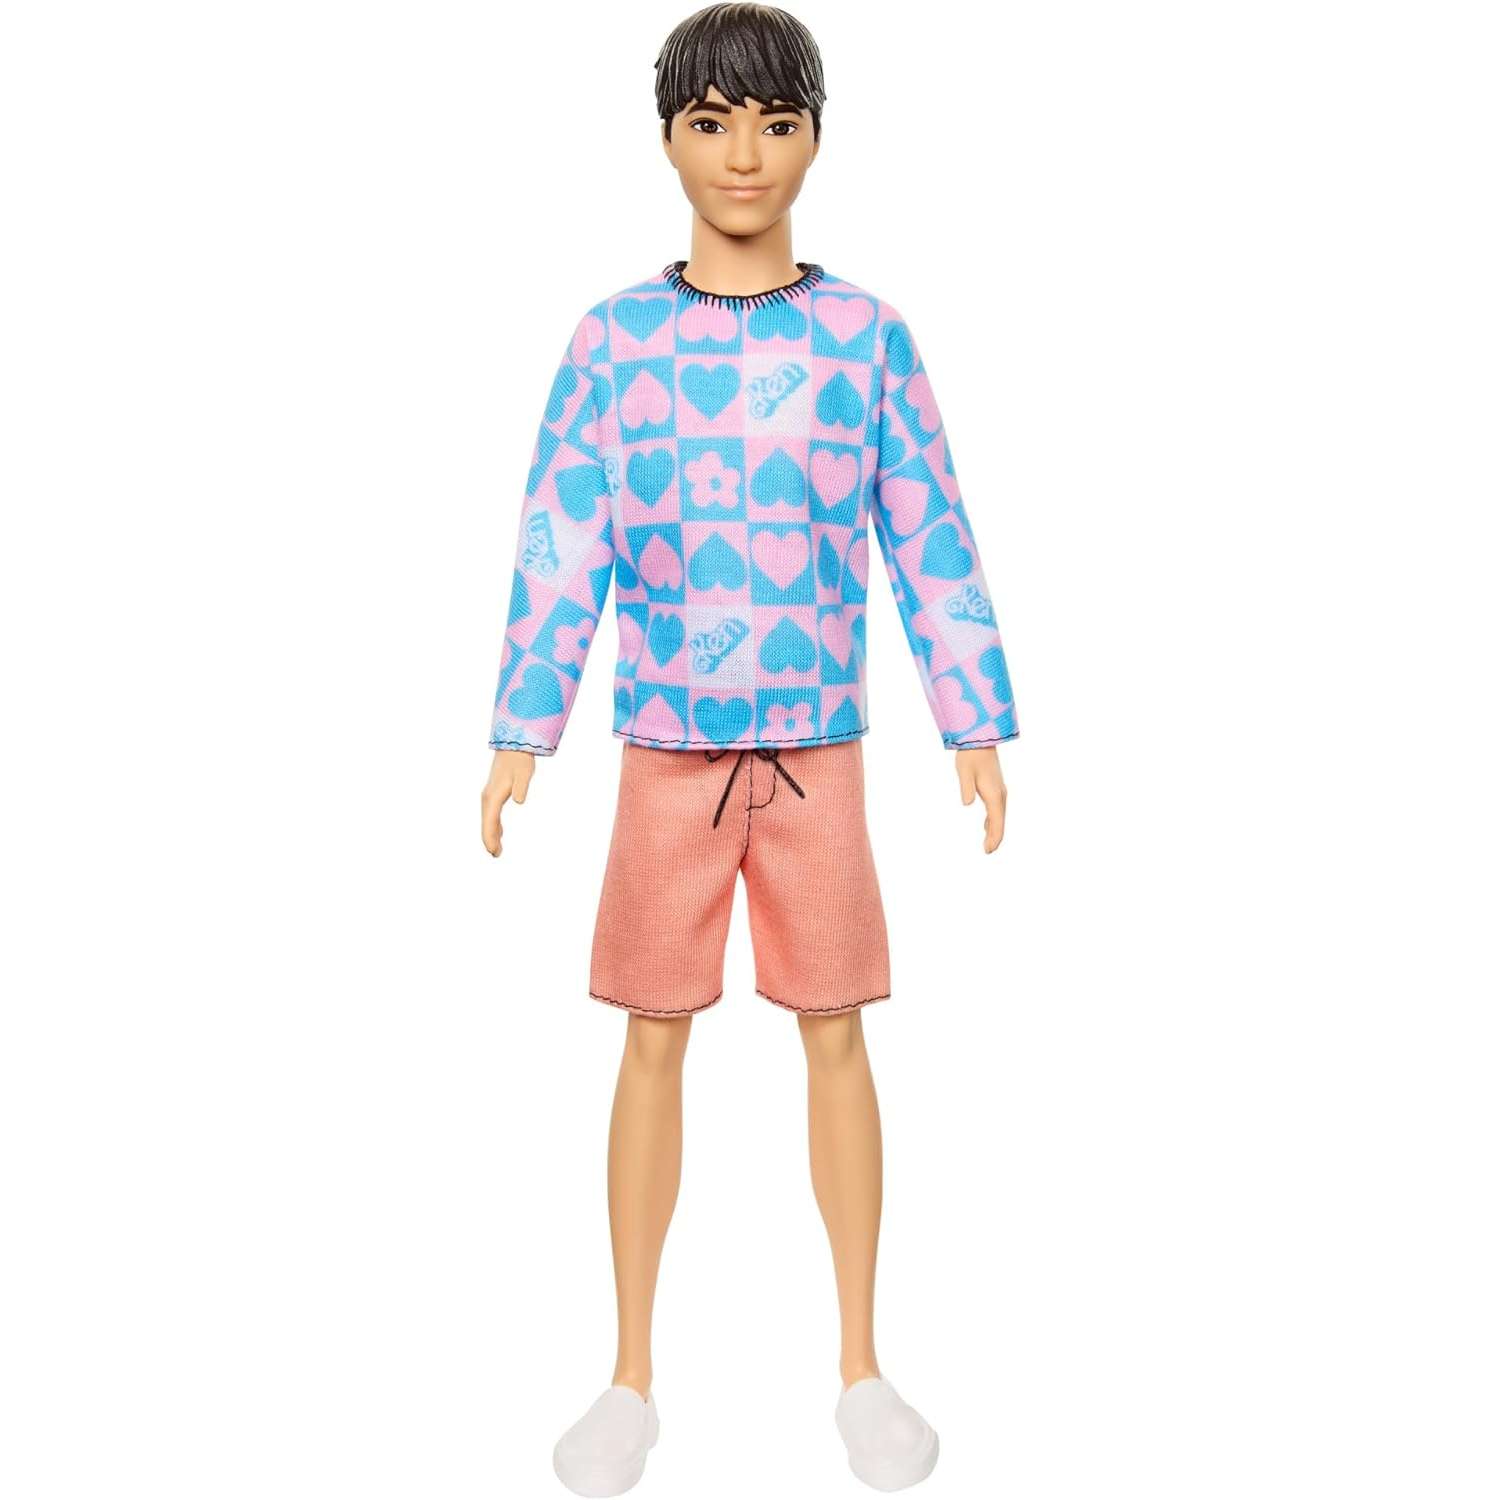 Кукла Barbie Fashionista Ken голубой и розовый свитер HRH24 HRH24 - фото 1